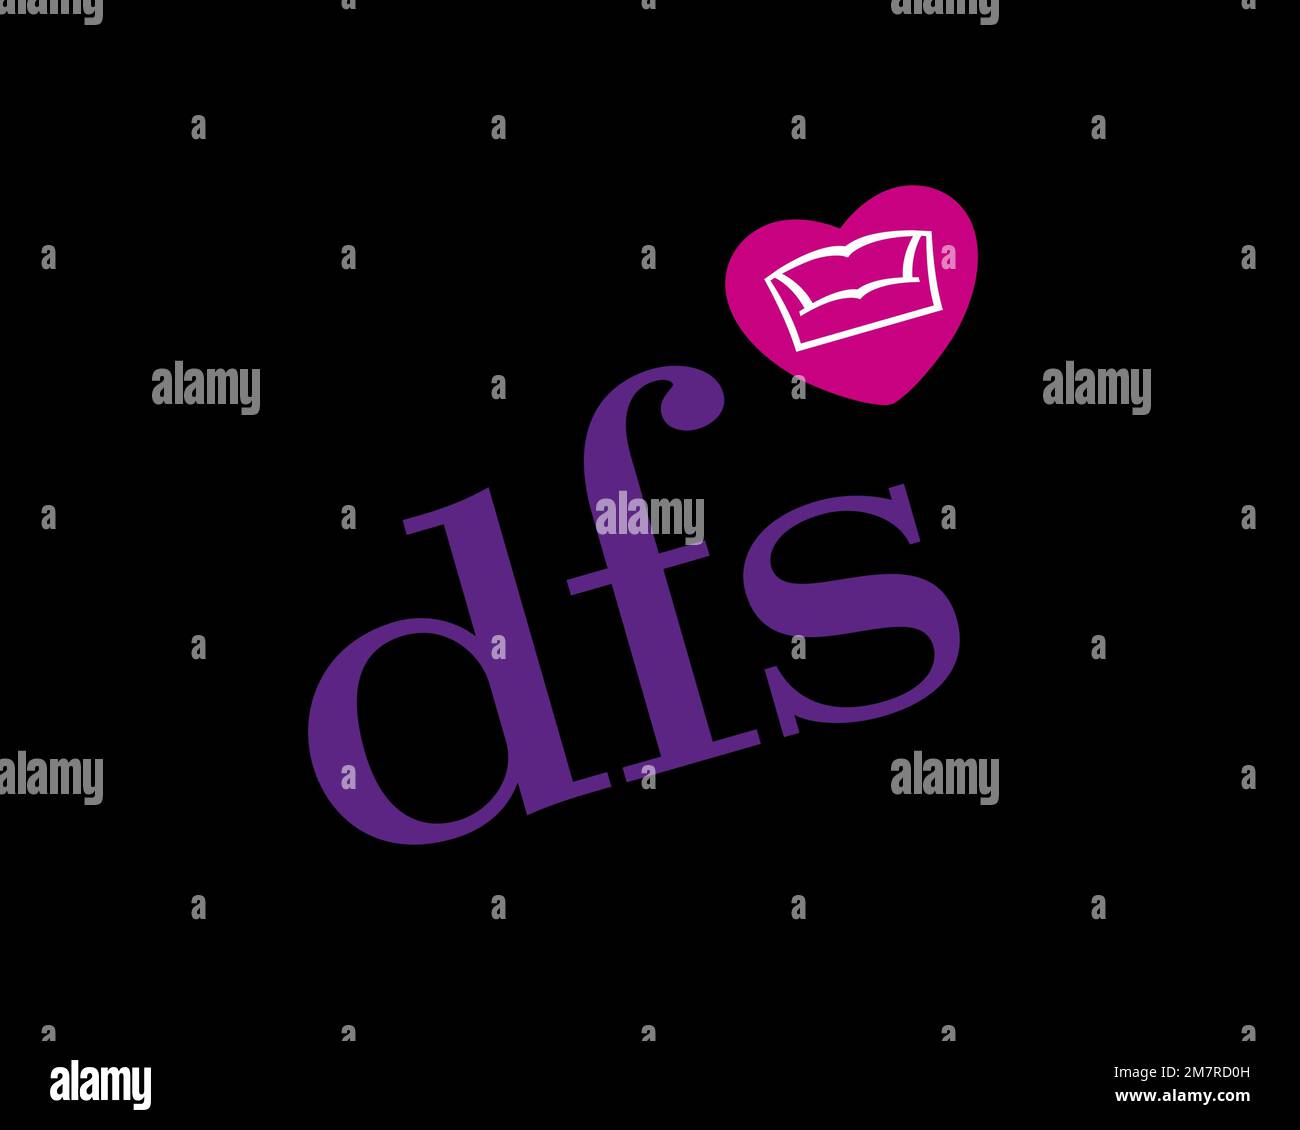 DFS logo by bluehornetdesign on DeviantArt